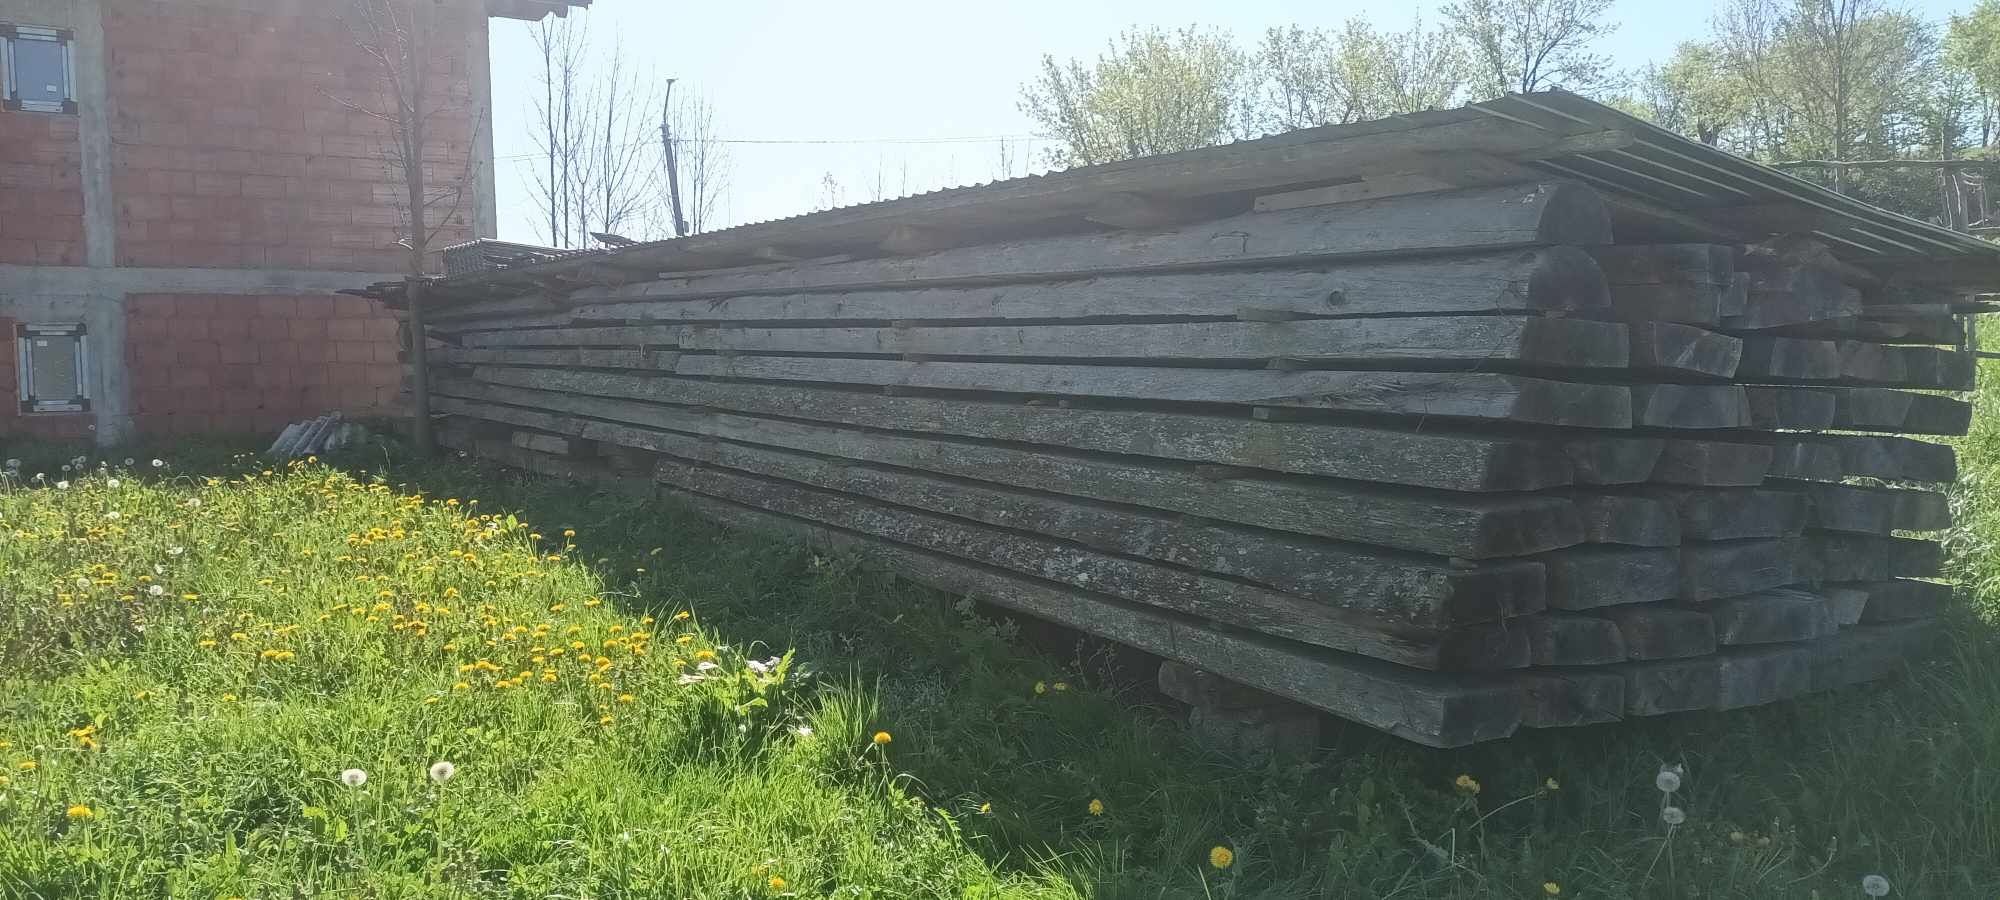 Vând lemn de brad uscat de 15 ani și 12 metri lungime